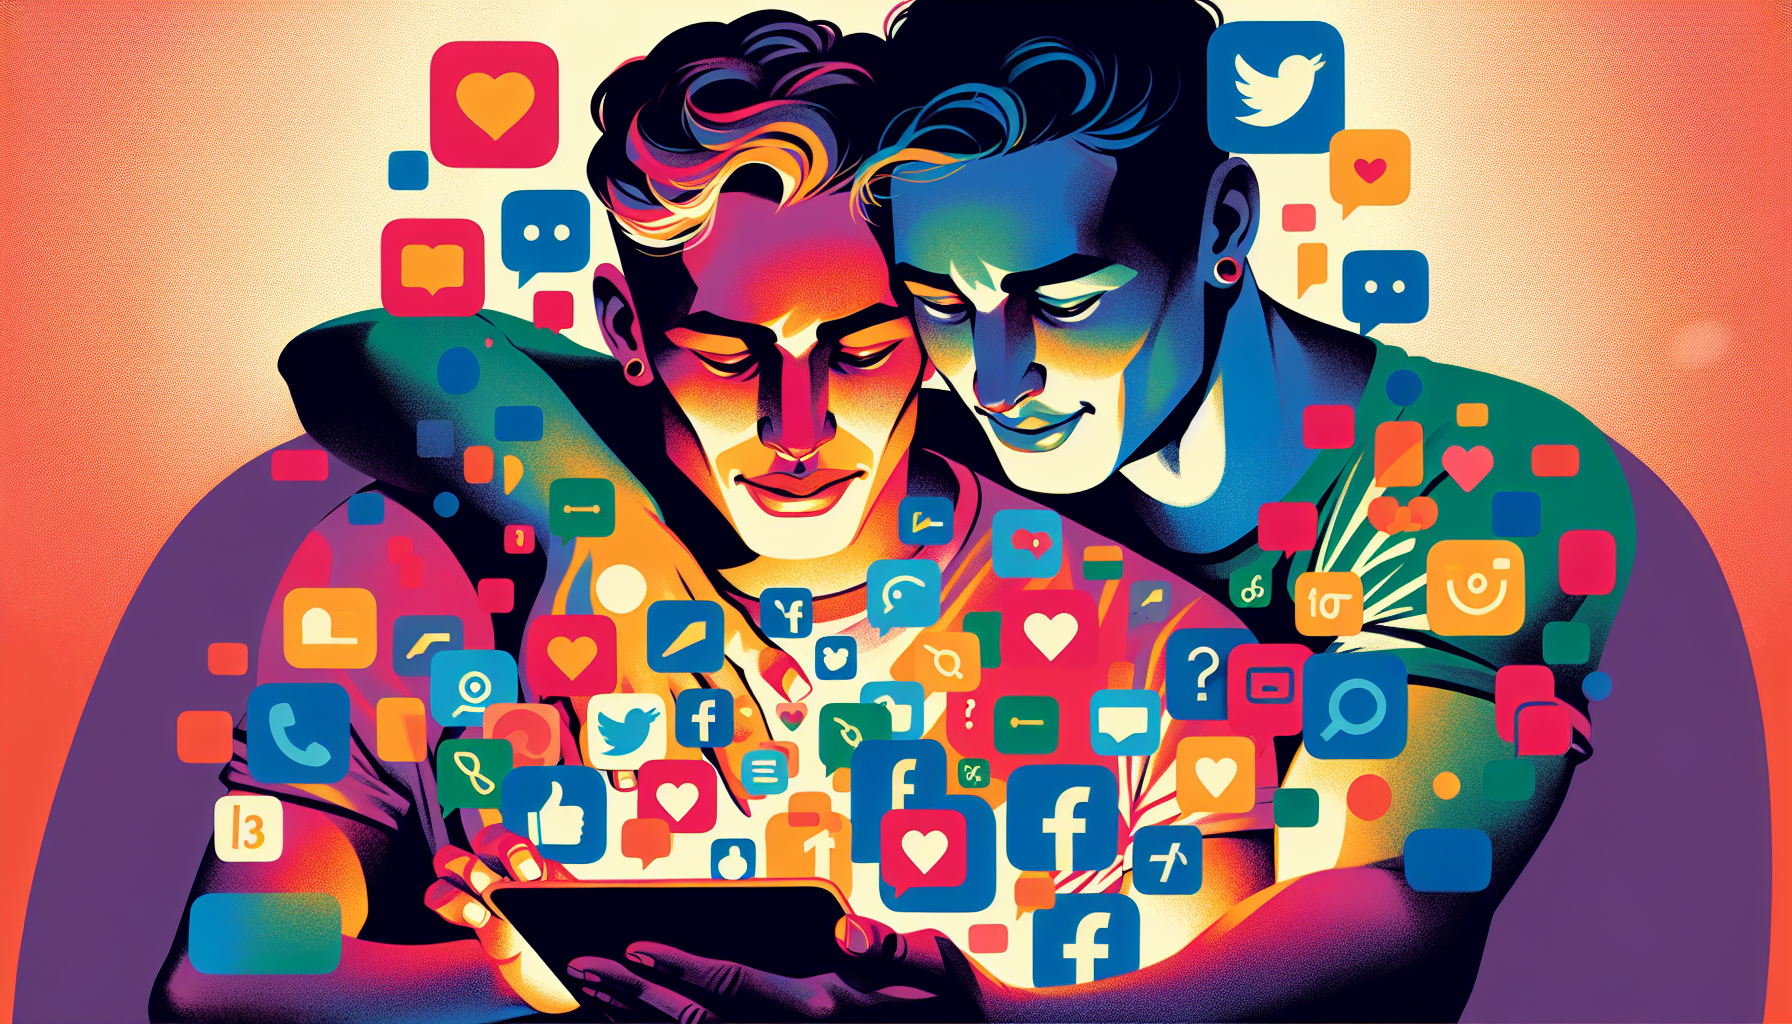 Illustration of LGBTQ+ couple navigating social media together